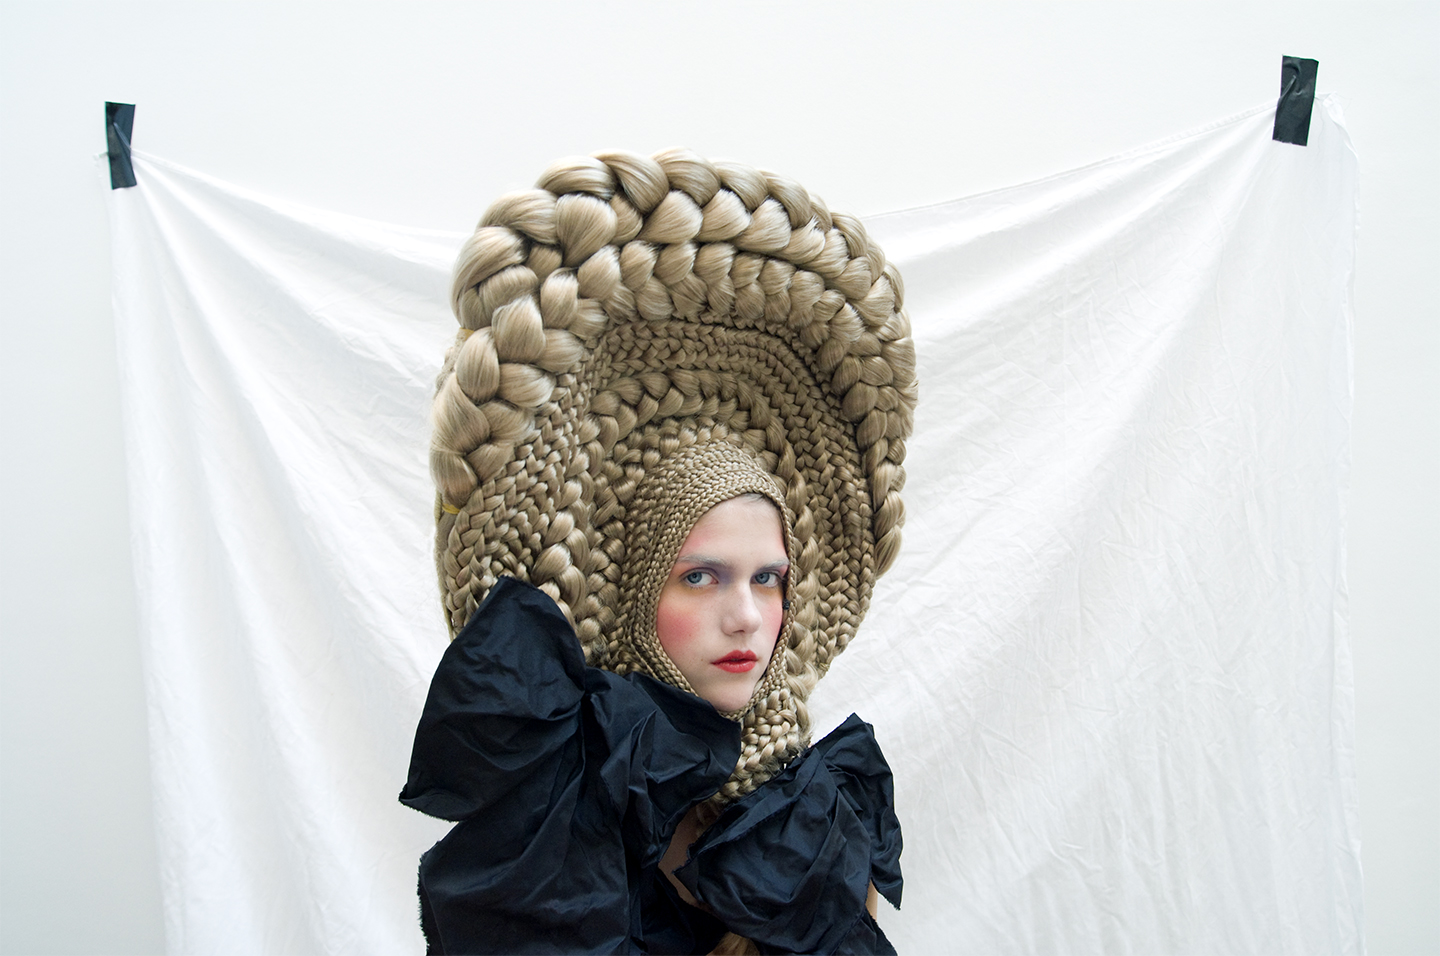 Marisol Suarez, Braided wig © Katrin Backes. Courtesy of Musée des Arts Décoratifs